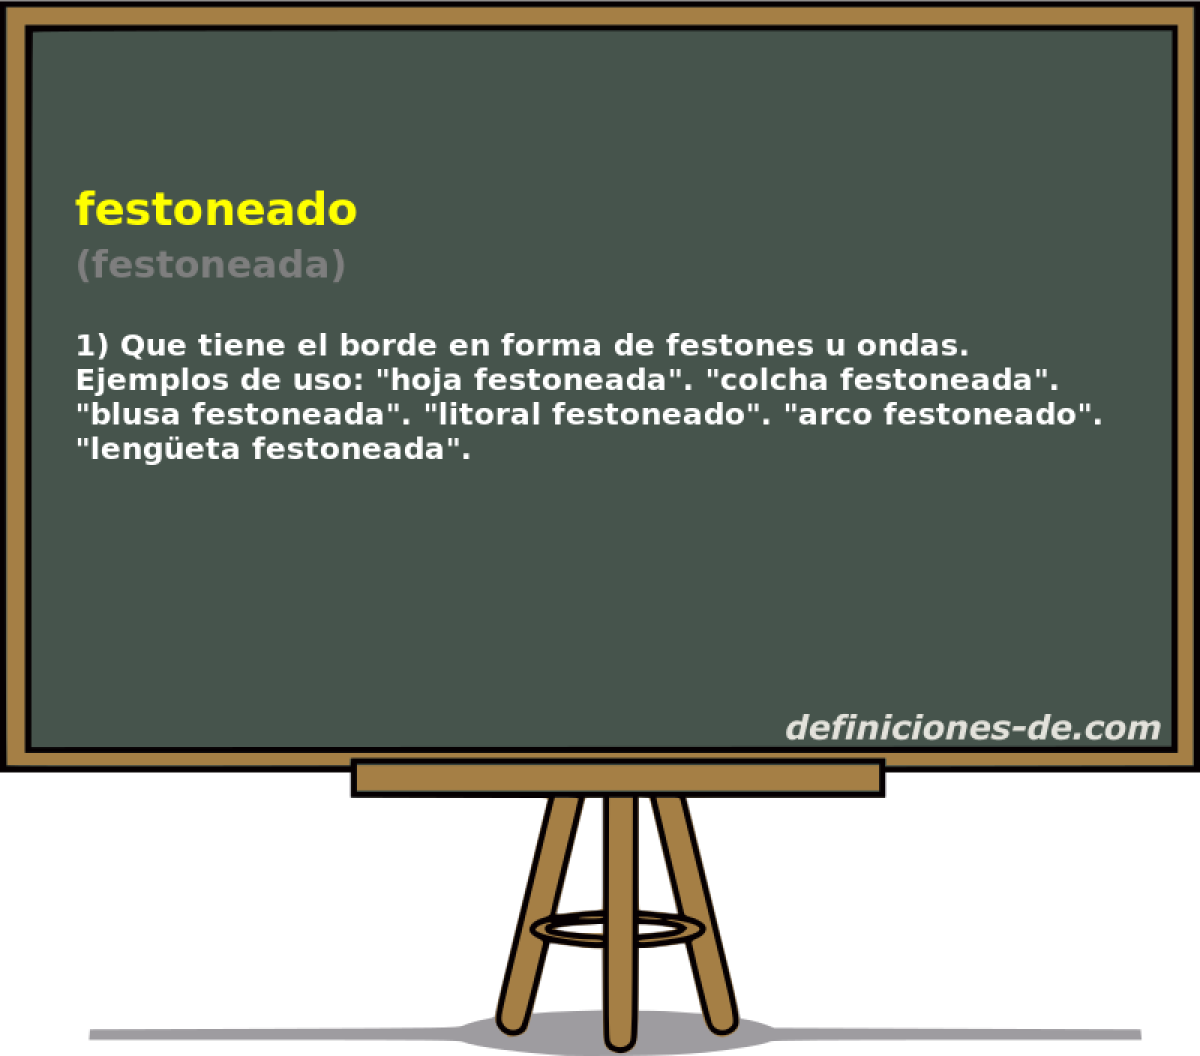 festoneado (festoneada)